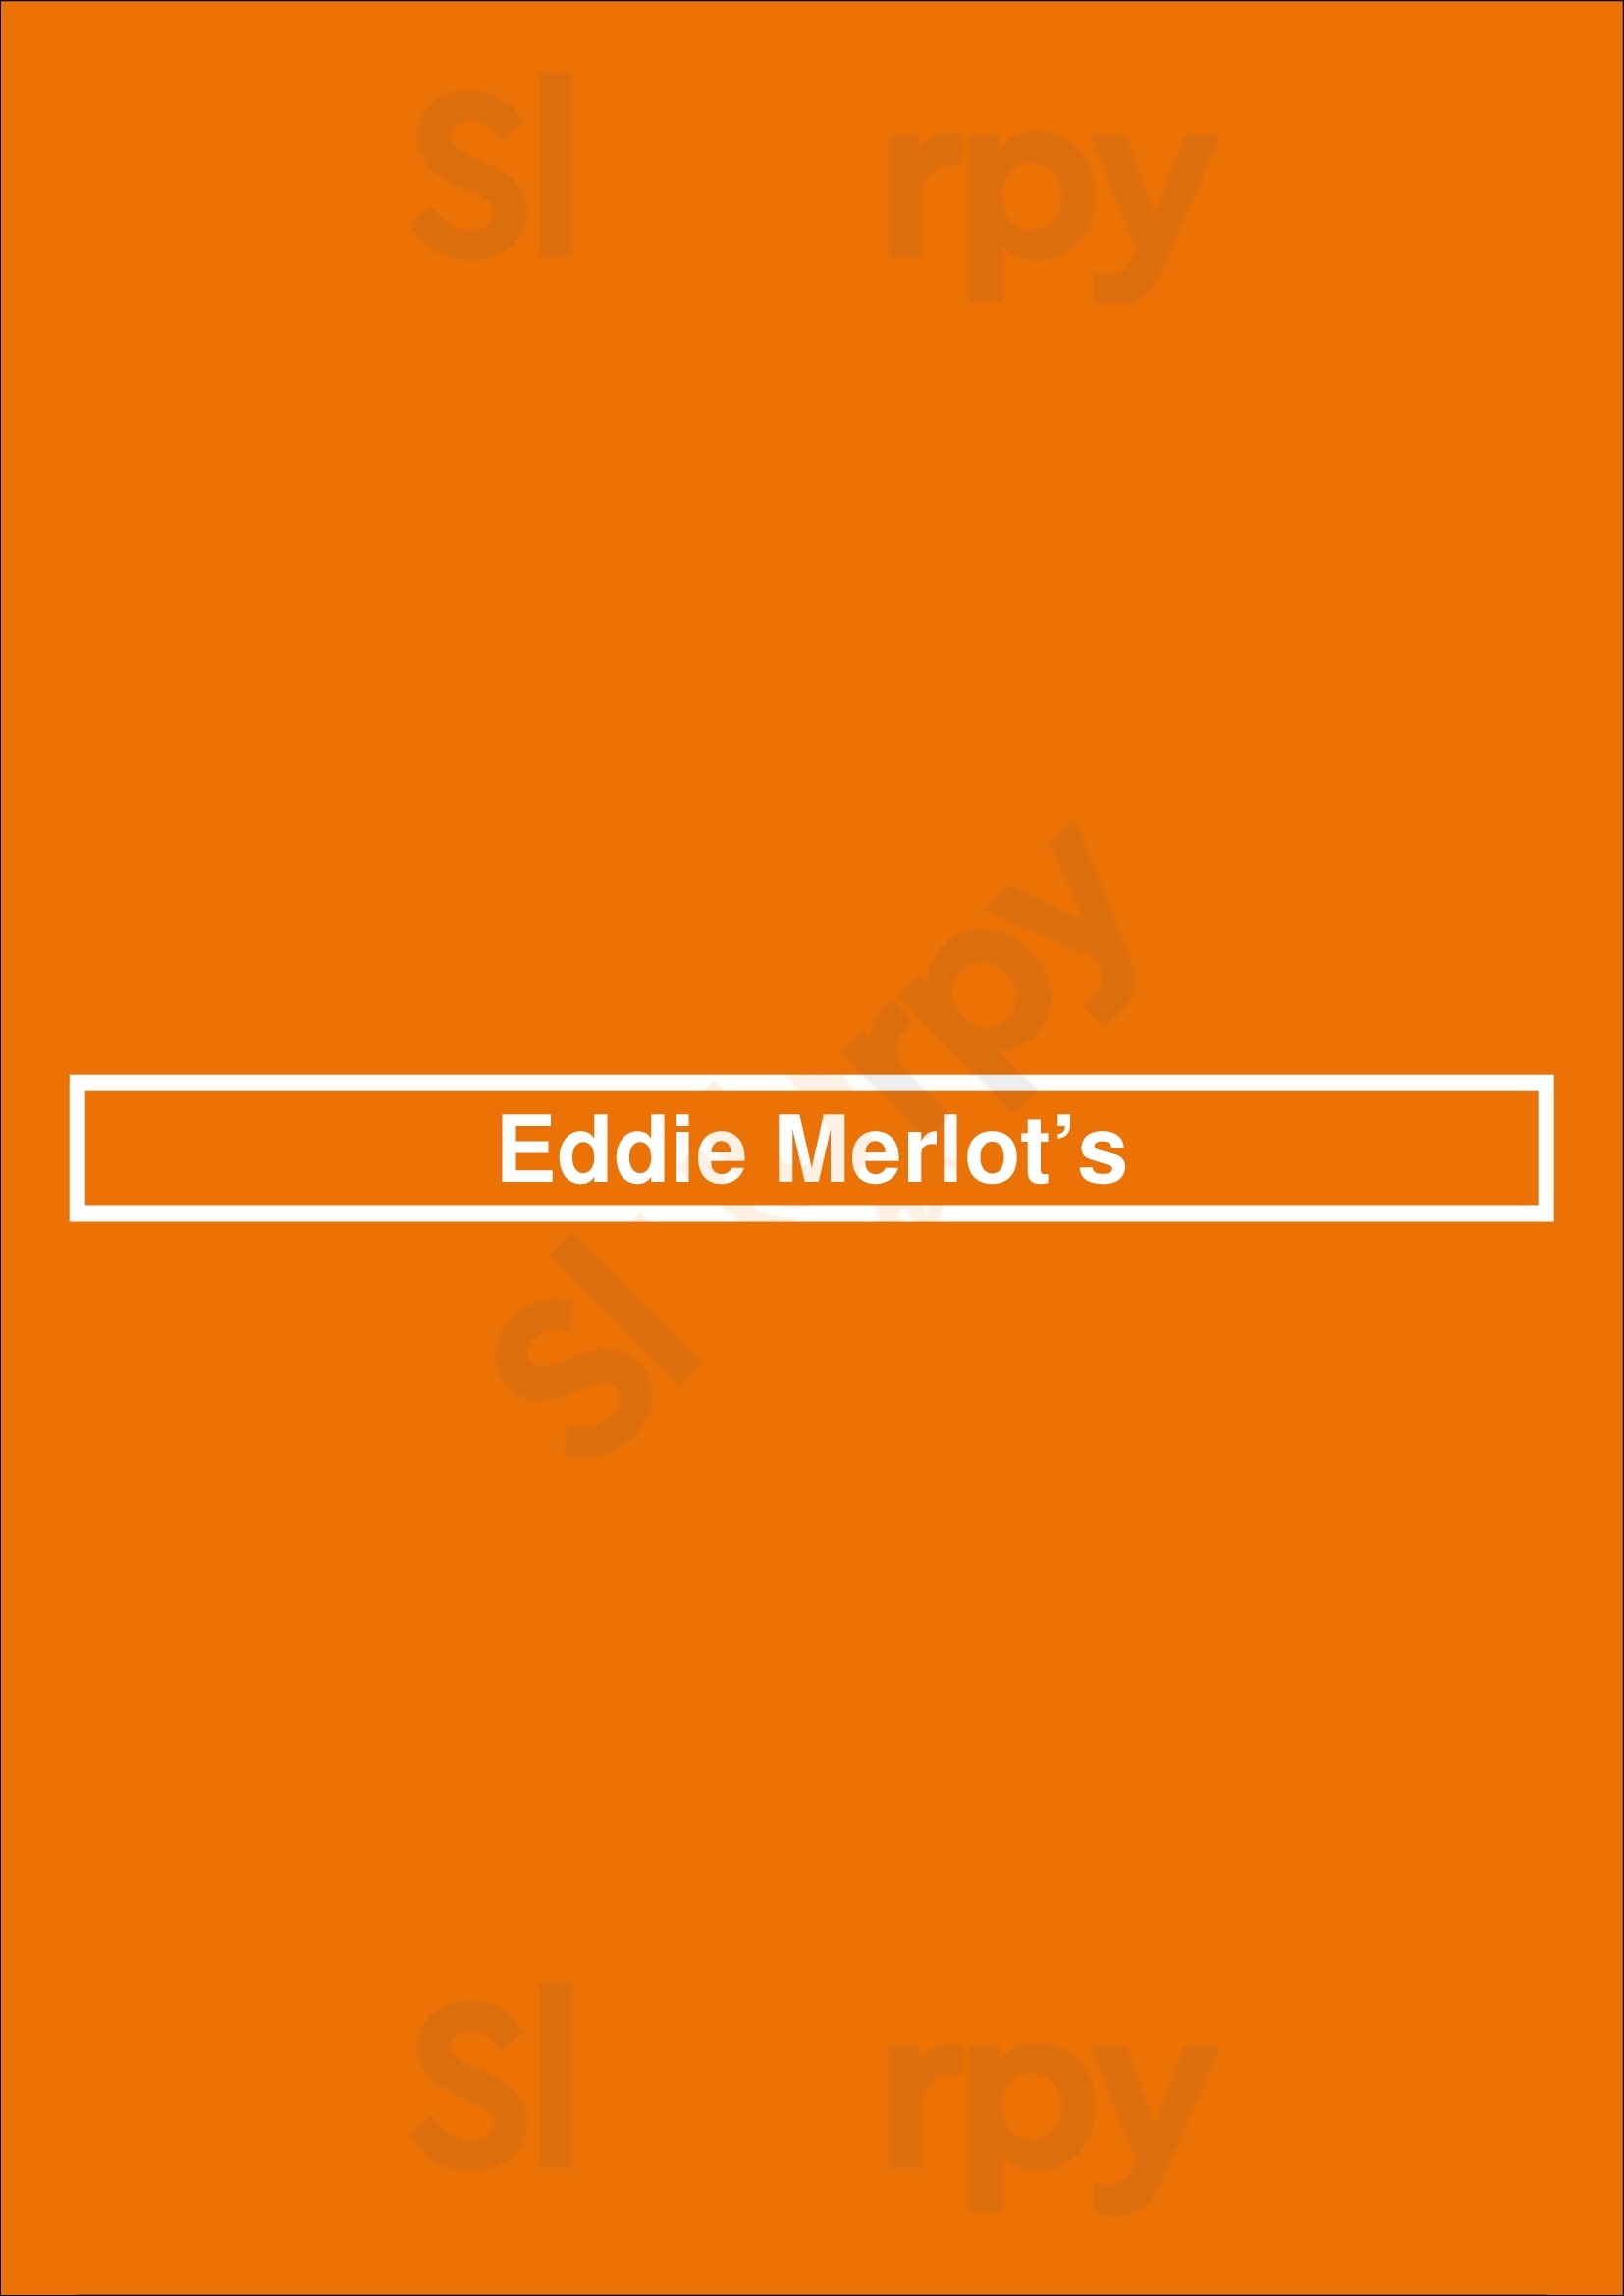 Eddie Merlot's Cincinnati Menu - 1